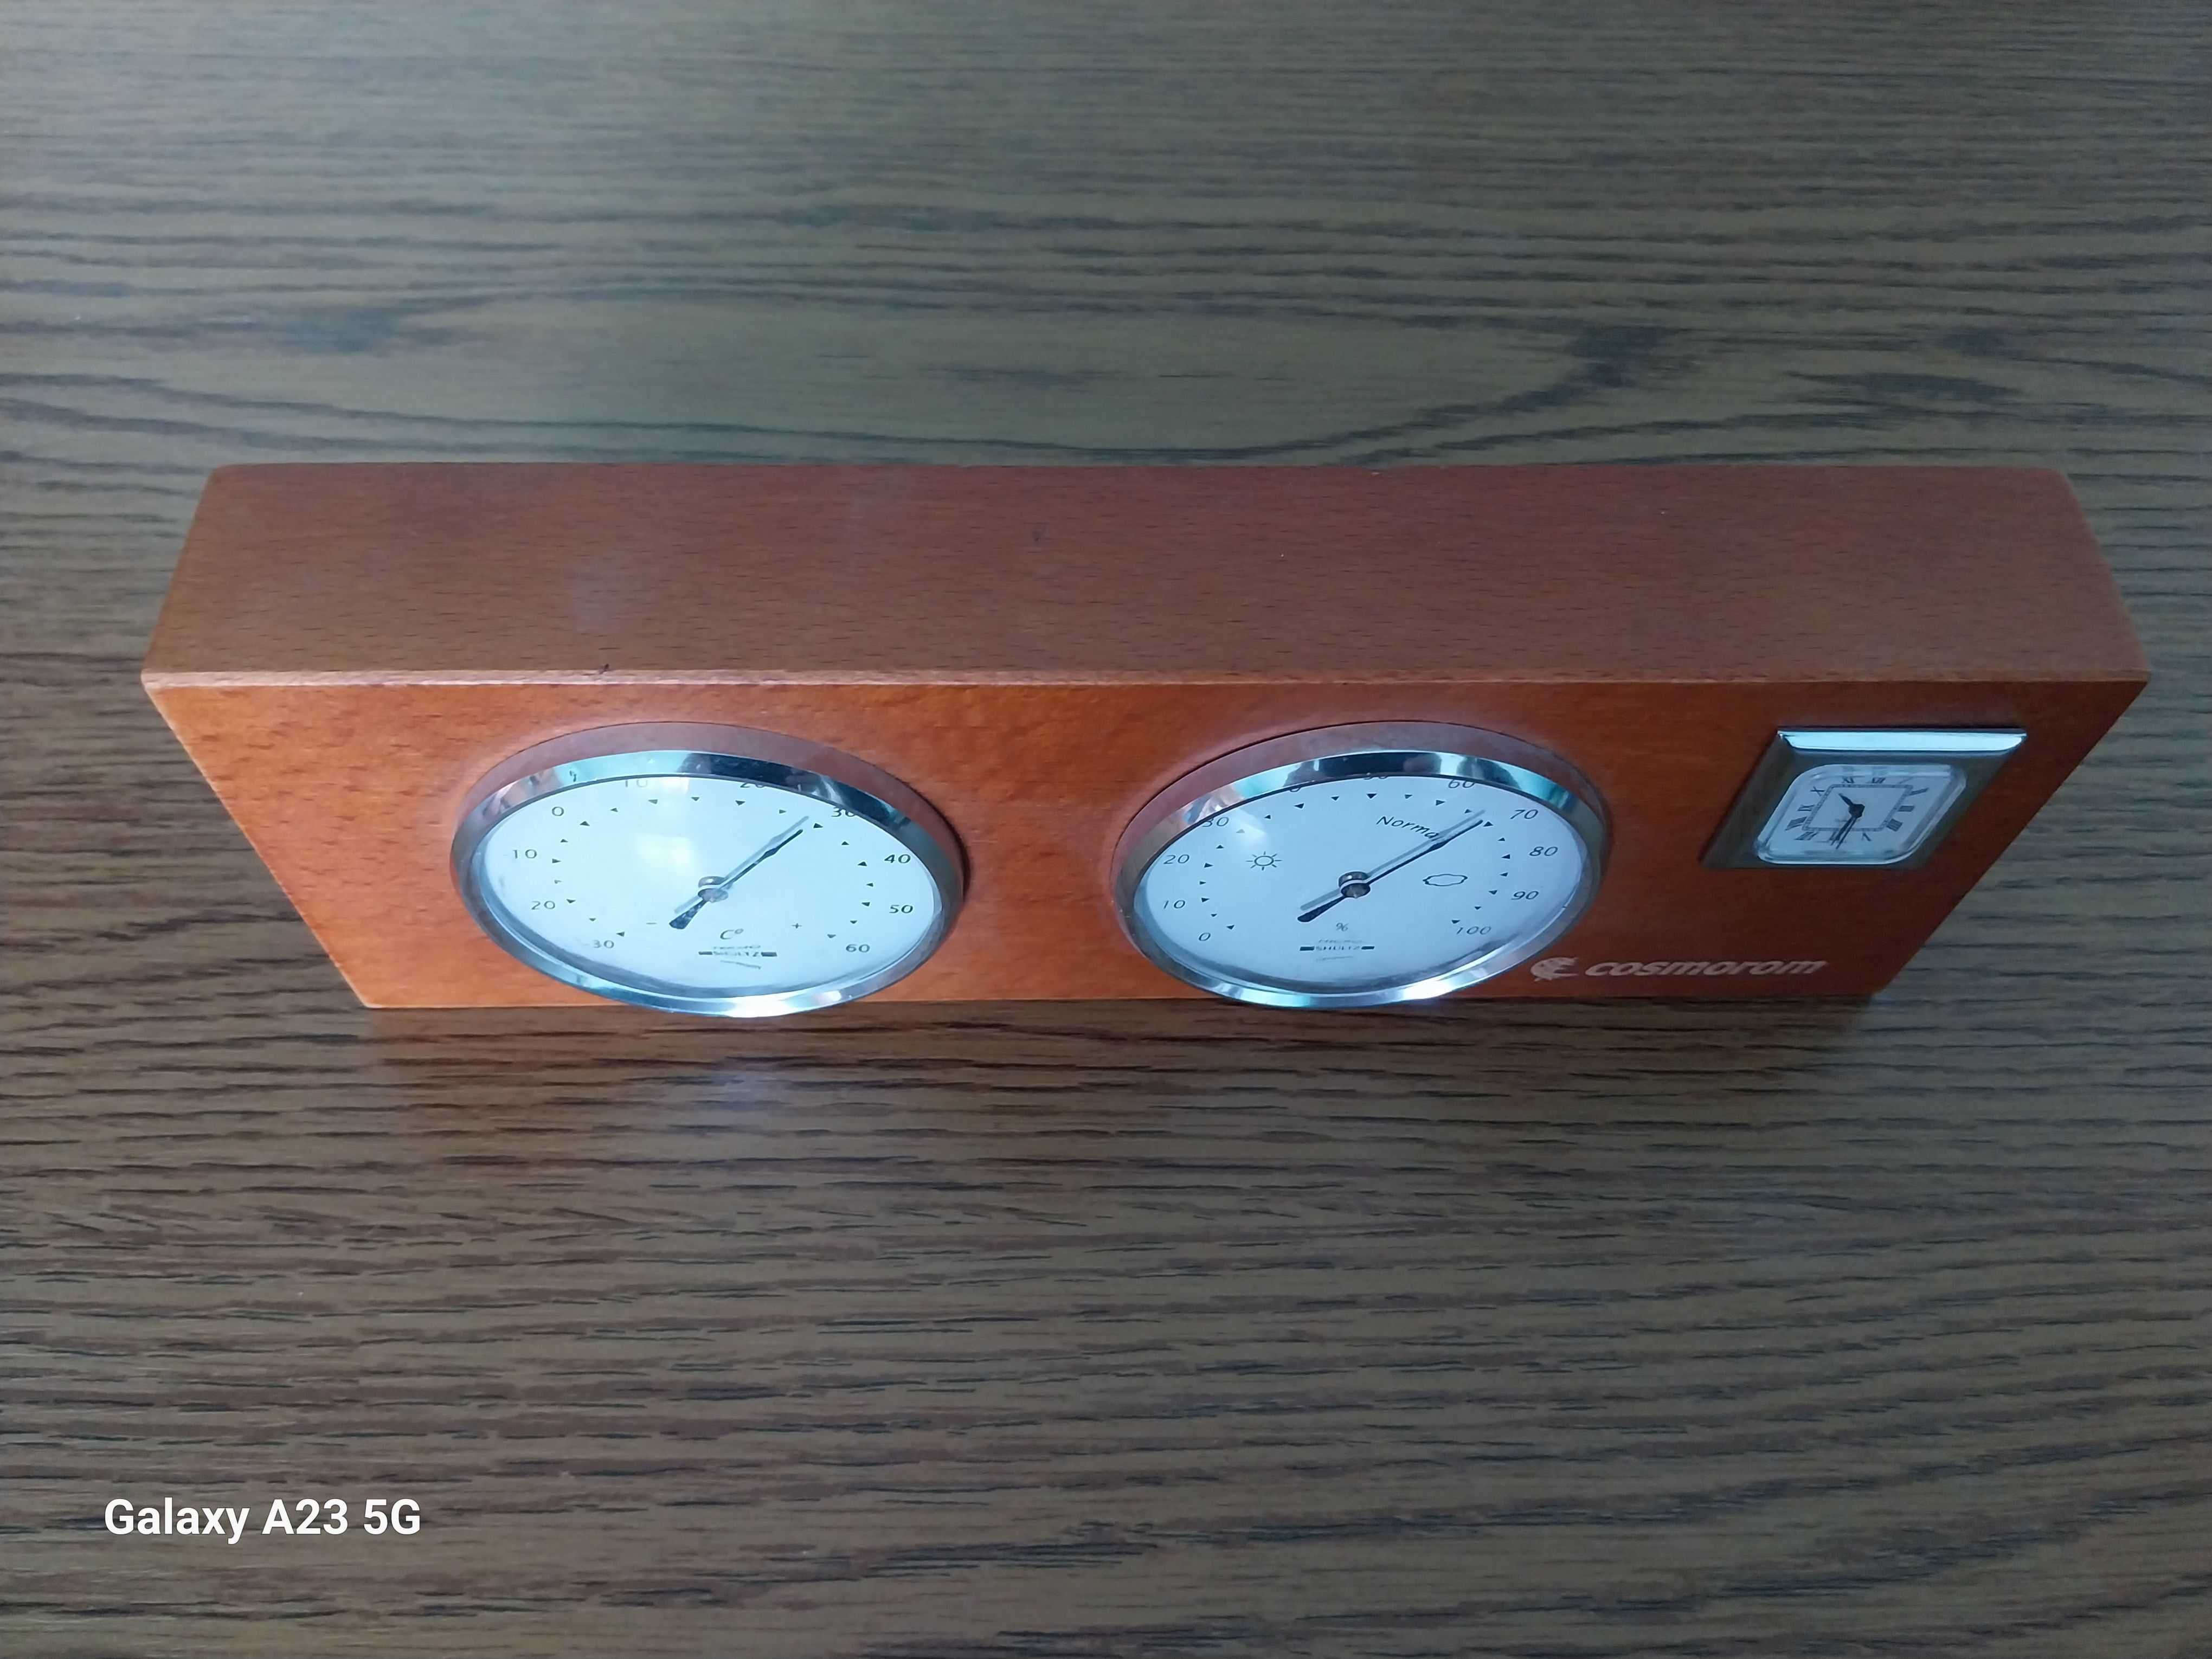 Ansamblu termometru, higrometru si ceas pentru birou